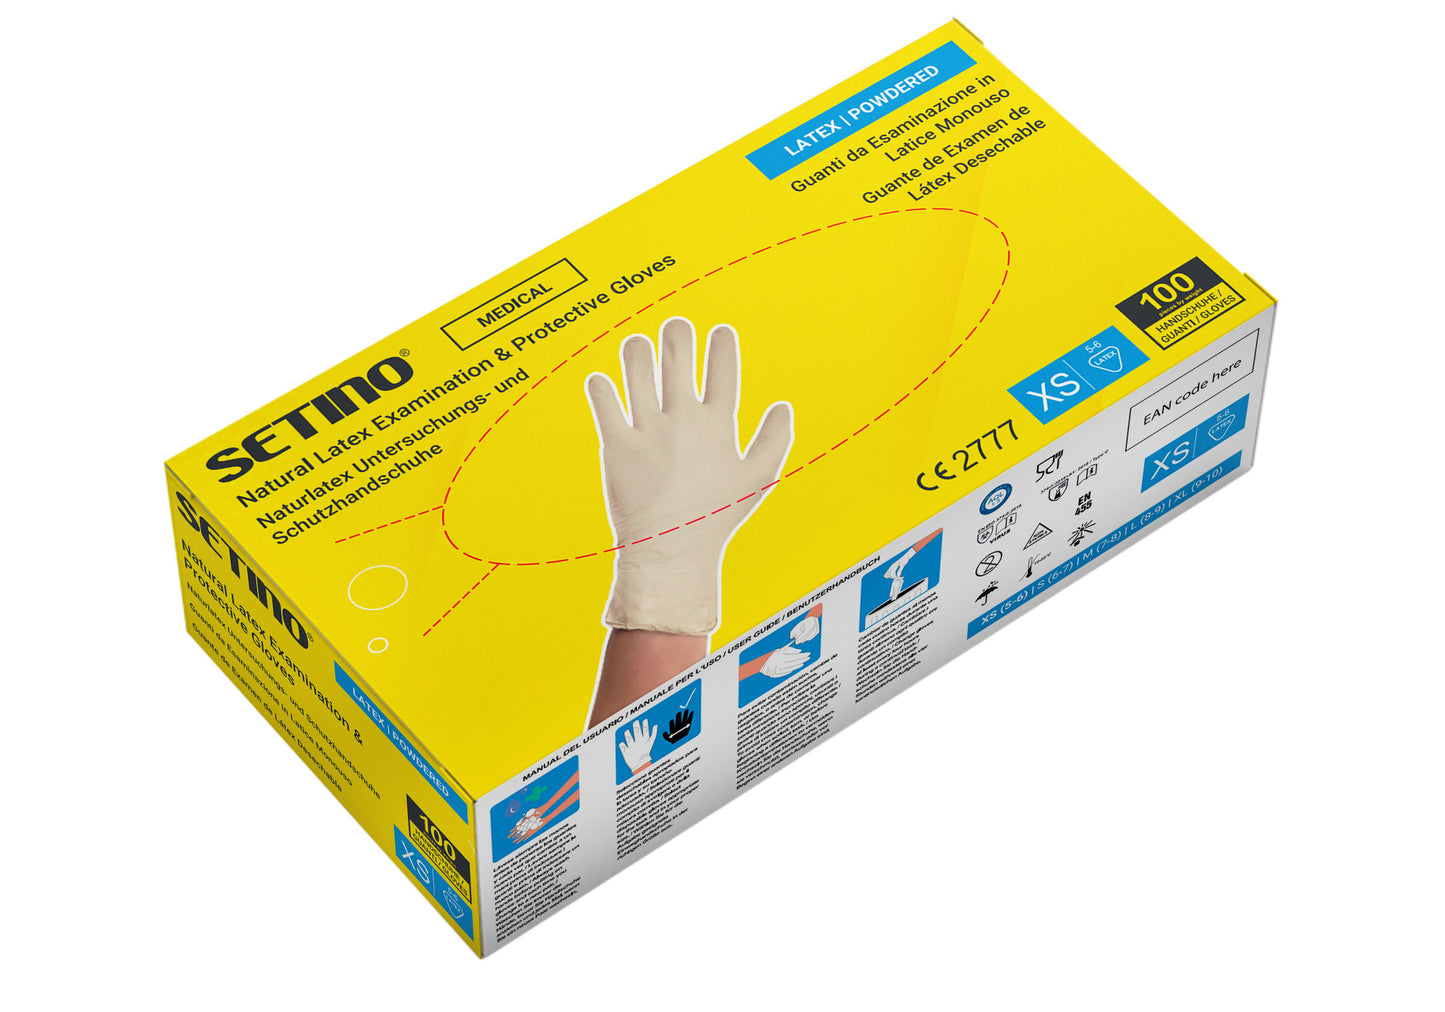 LX01 cremă pentru mănuși de examinare și protecție din latex, sub formă de pudră, 5 grame